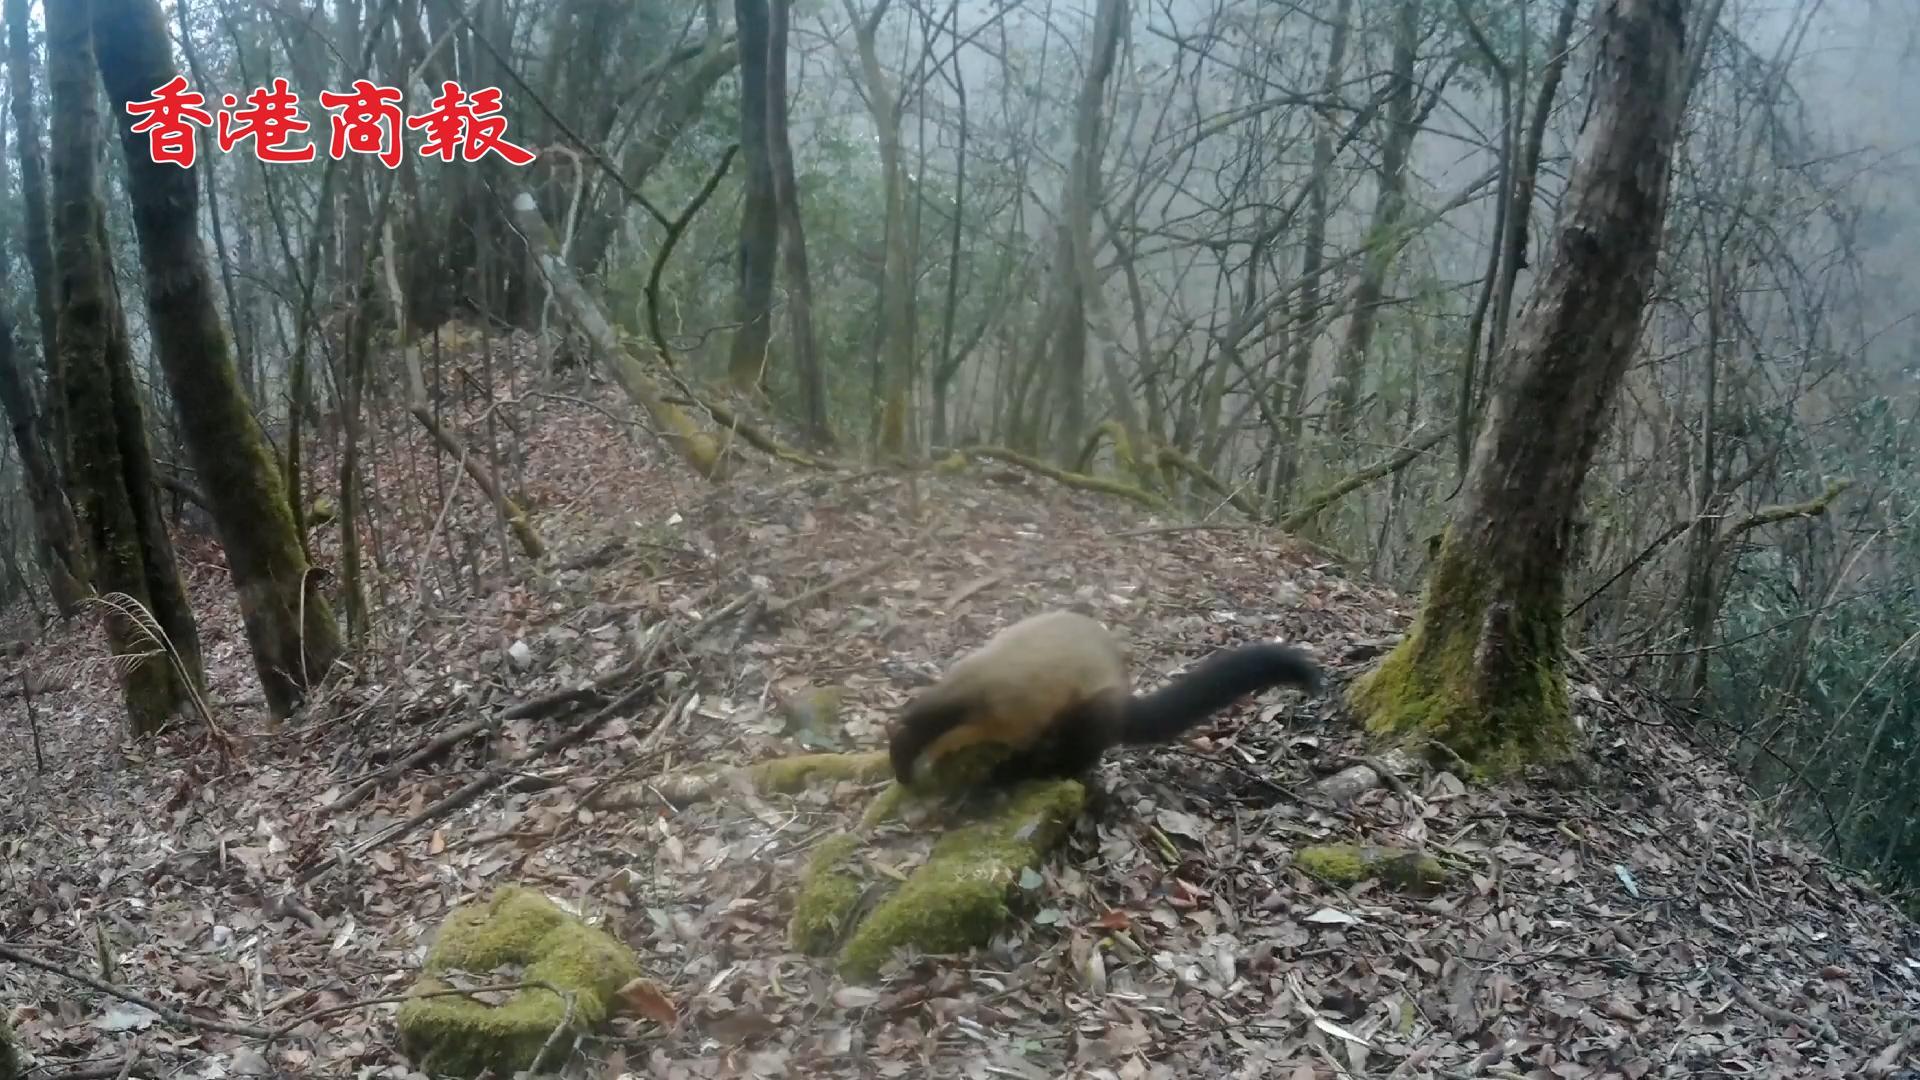 有片 | 重慶大巴山自然保護區拍到多種野生動物活動畫面